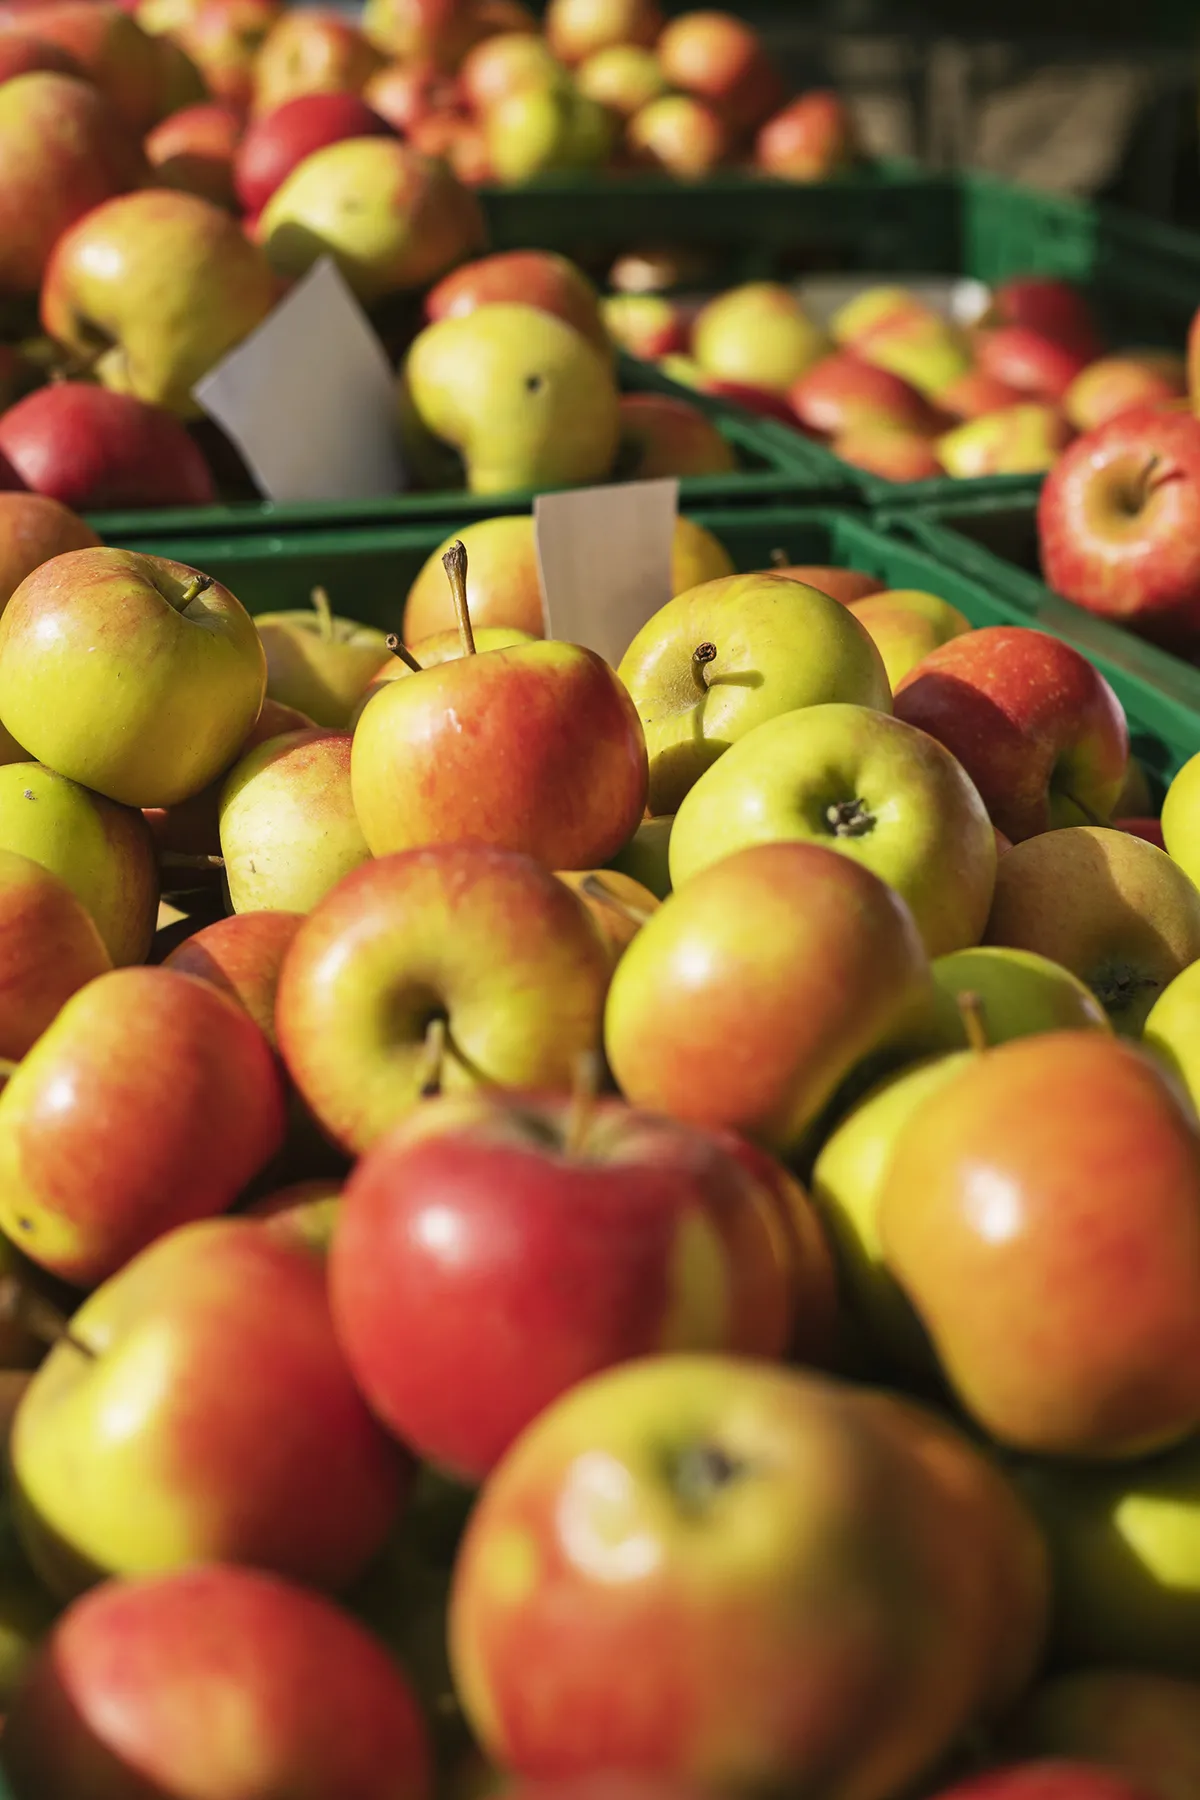 En automne, c'est le festival des pommes belges sur nos étales. Nous aimons en proposer des dizaines différentes. Certaines variétés viennent de France quand nous ne trouvons pas la variété souhaitée en Belgique.